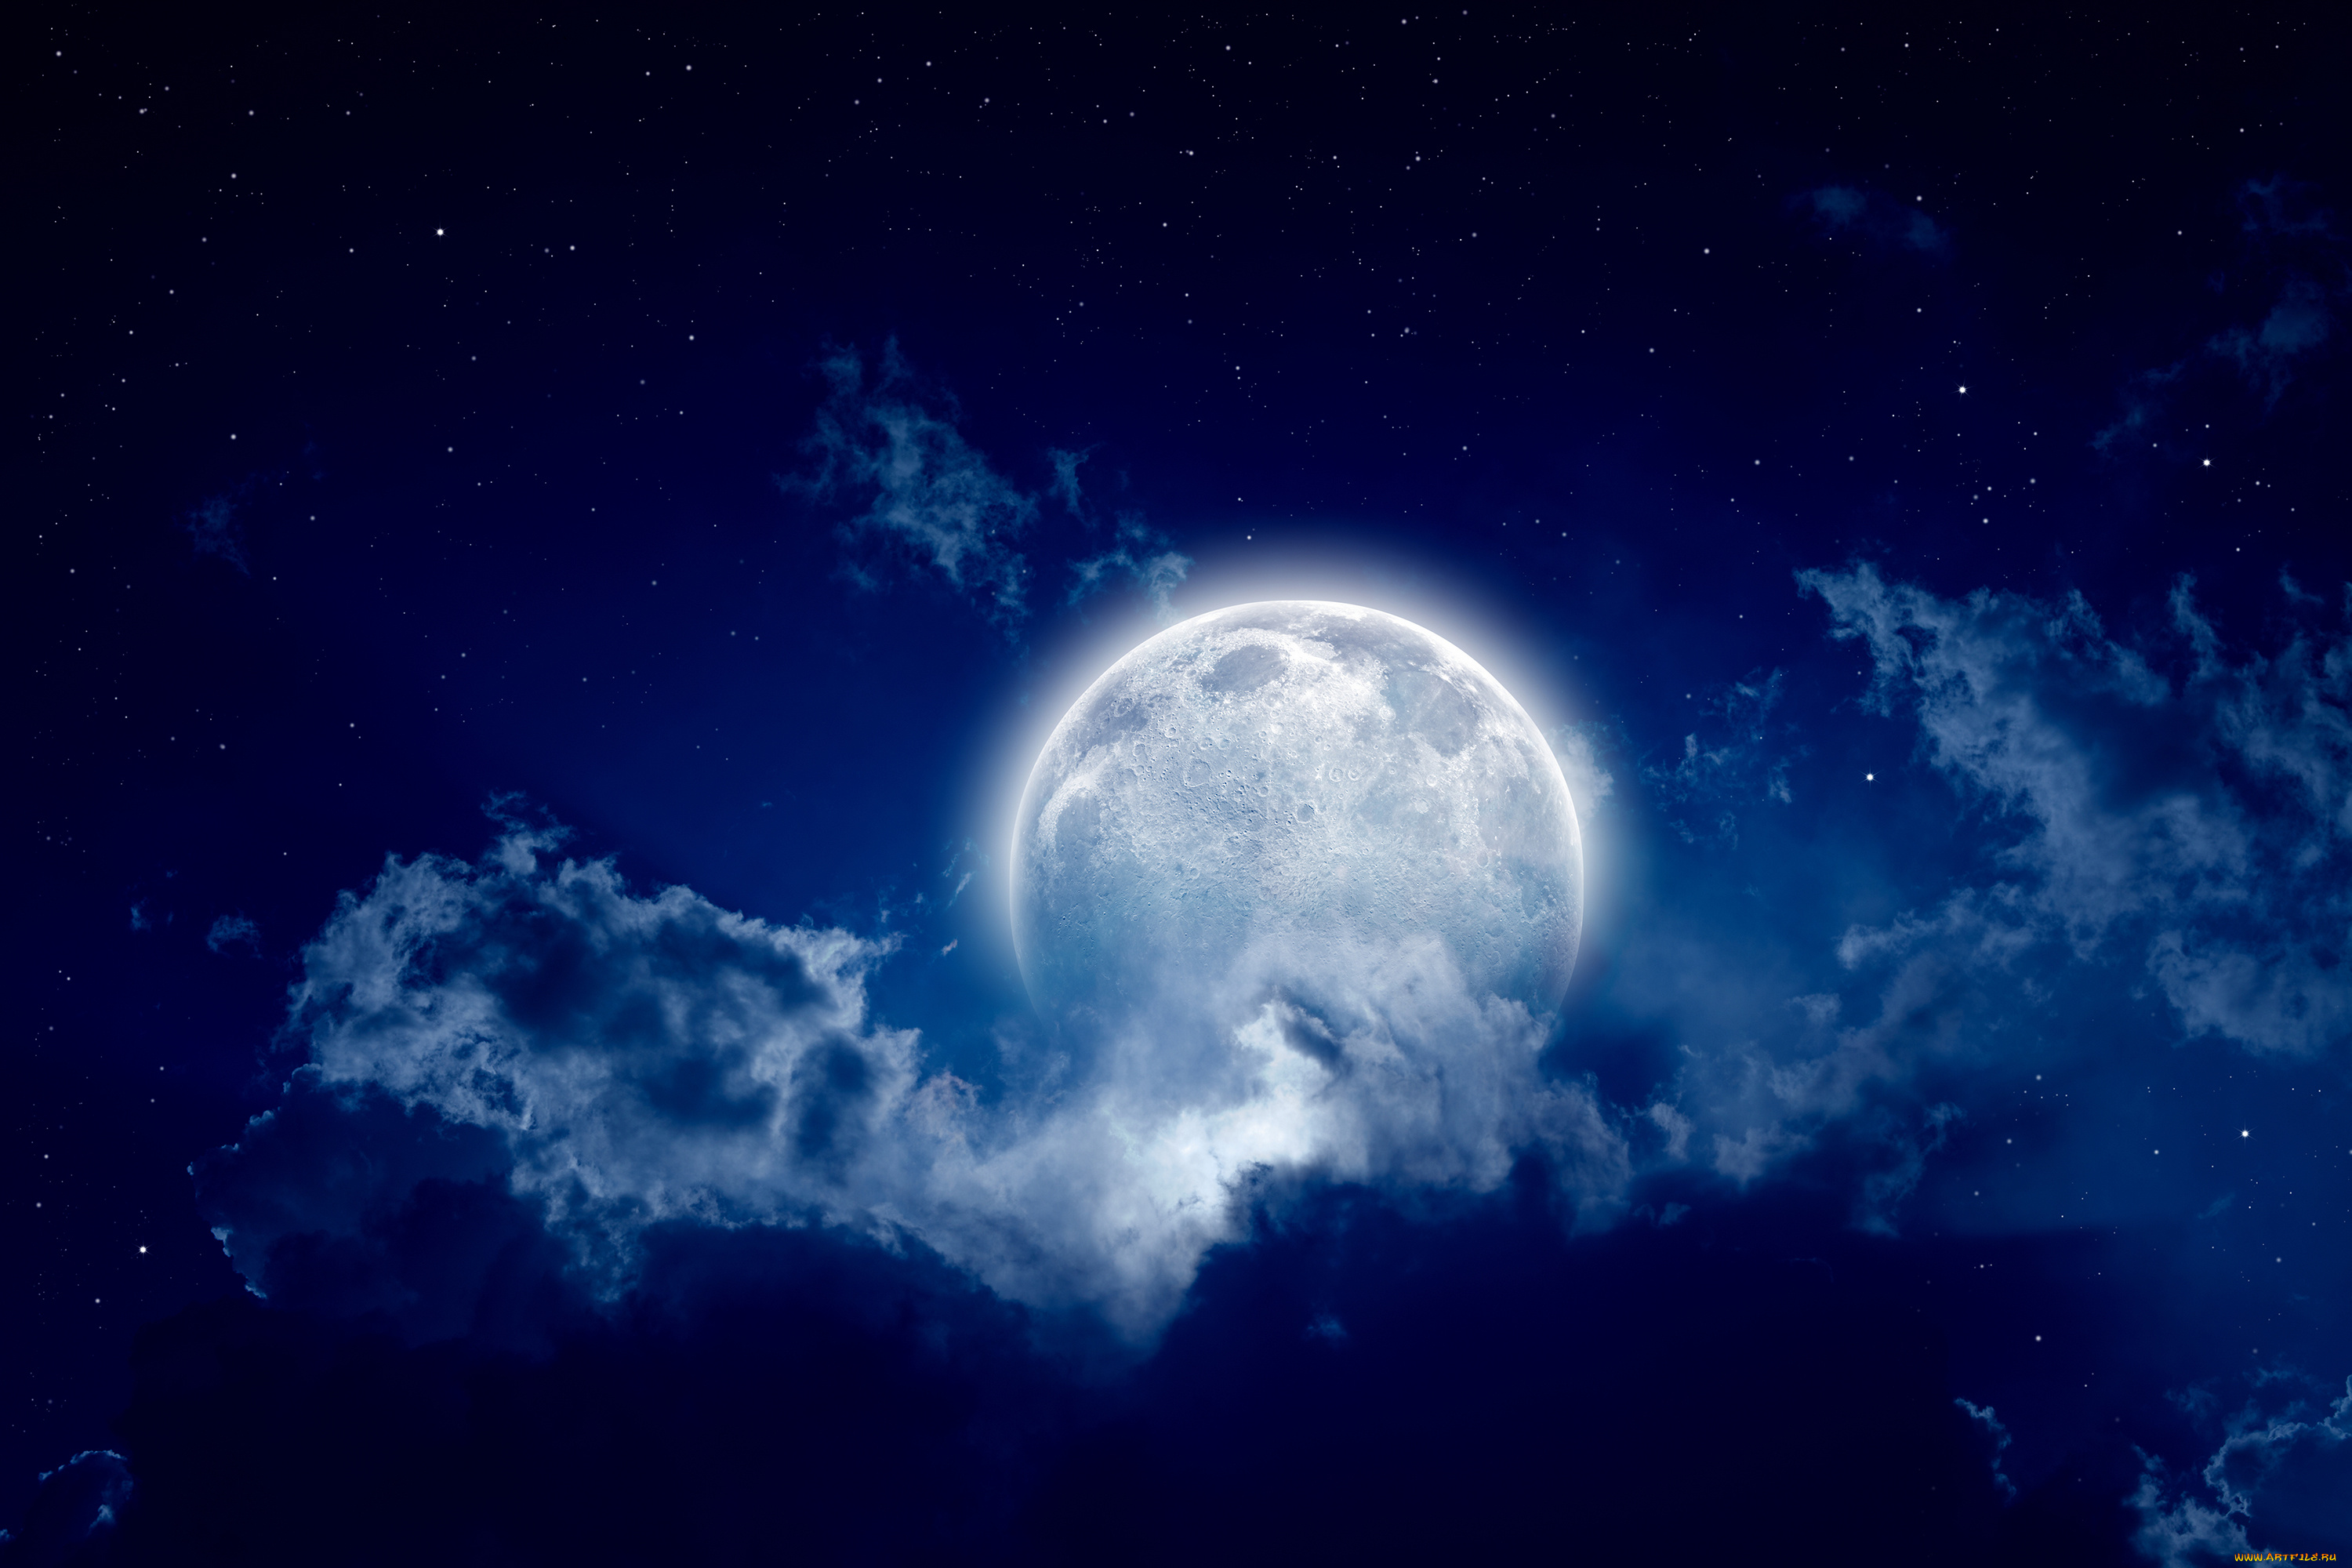 космос, луна, свет, тучи, полнолуние, пейзаж, звёзды, ночь, облака